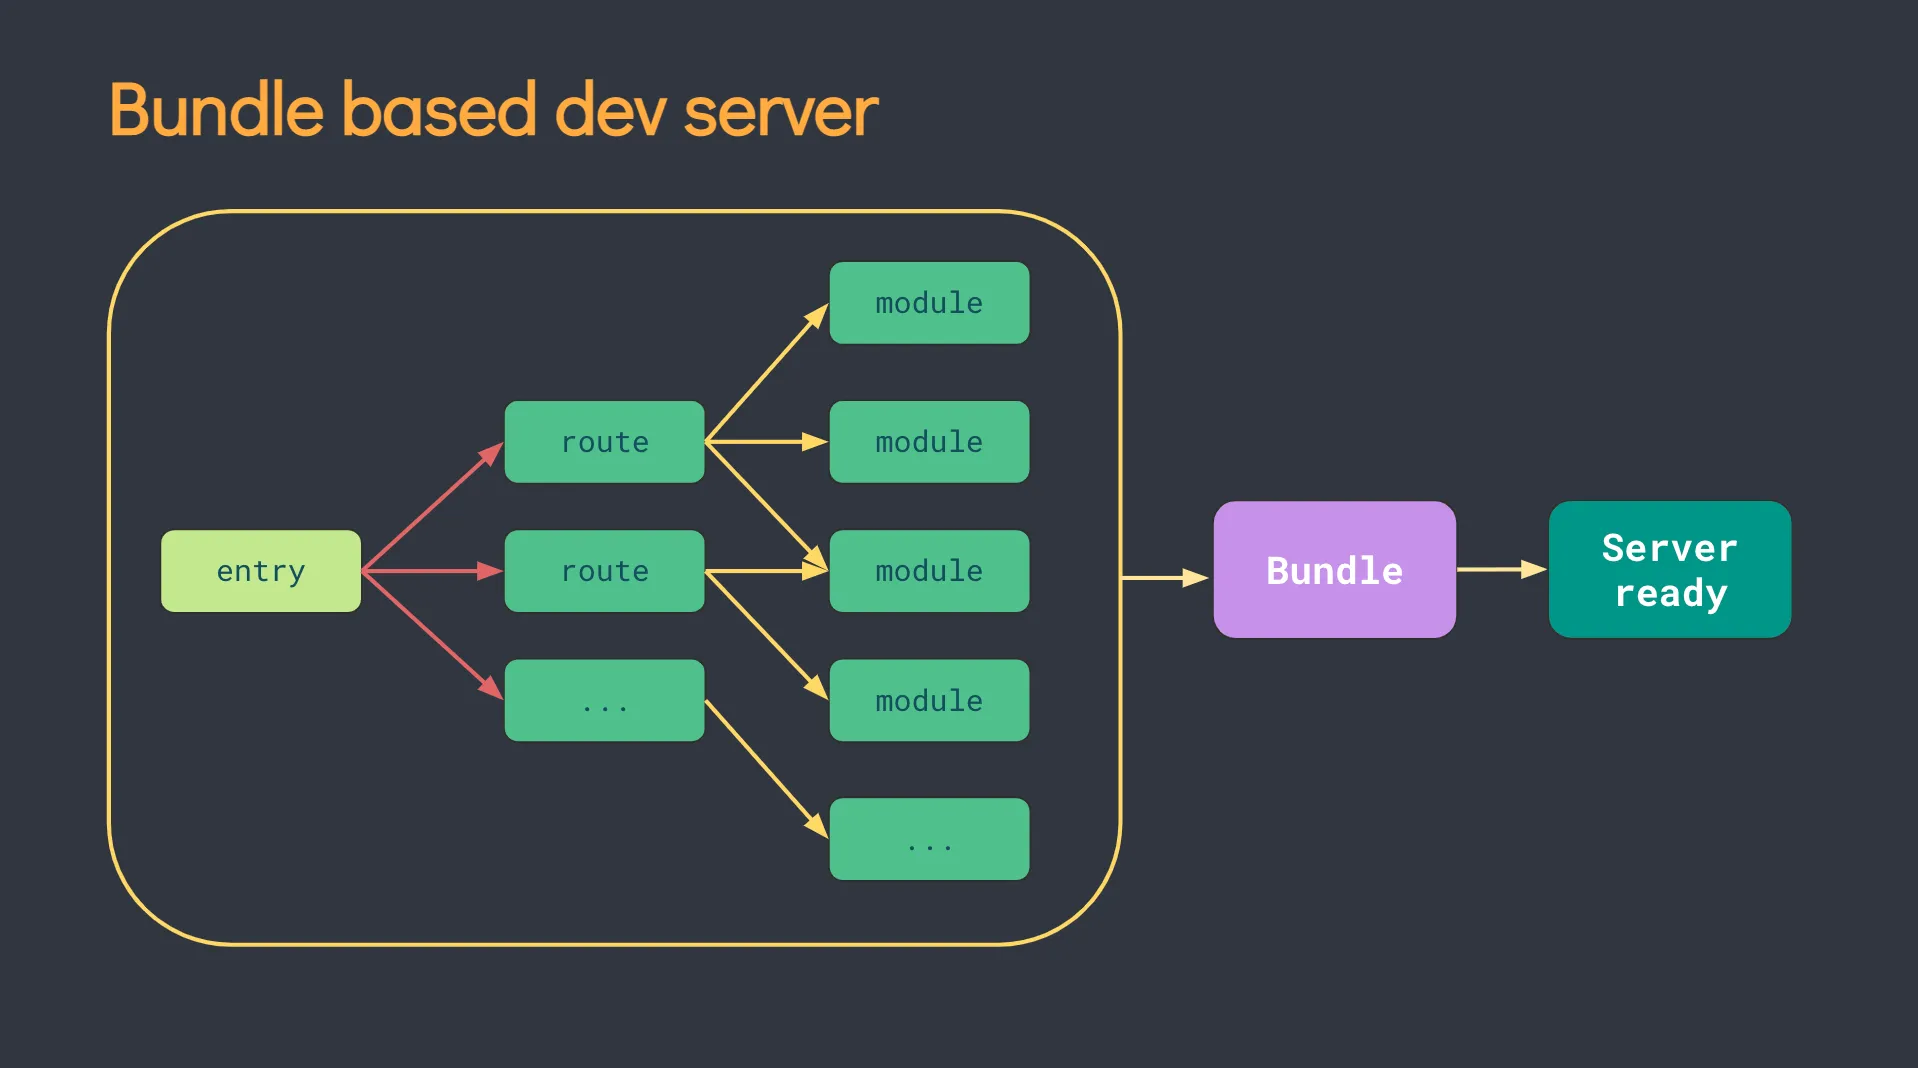 Bundle based dev server diagram